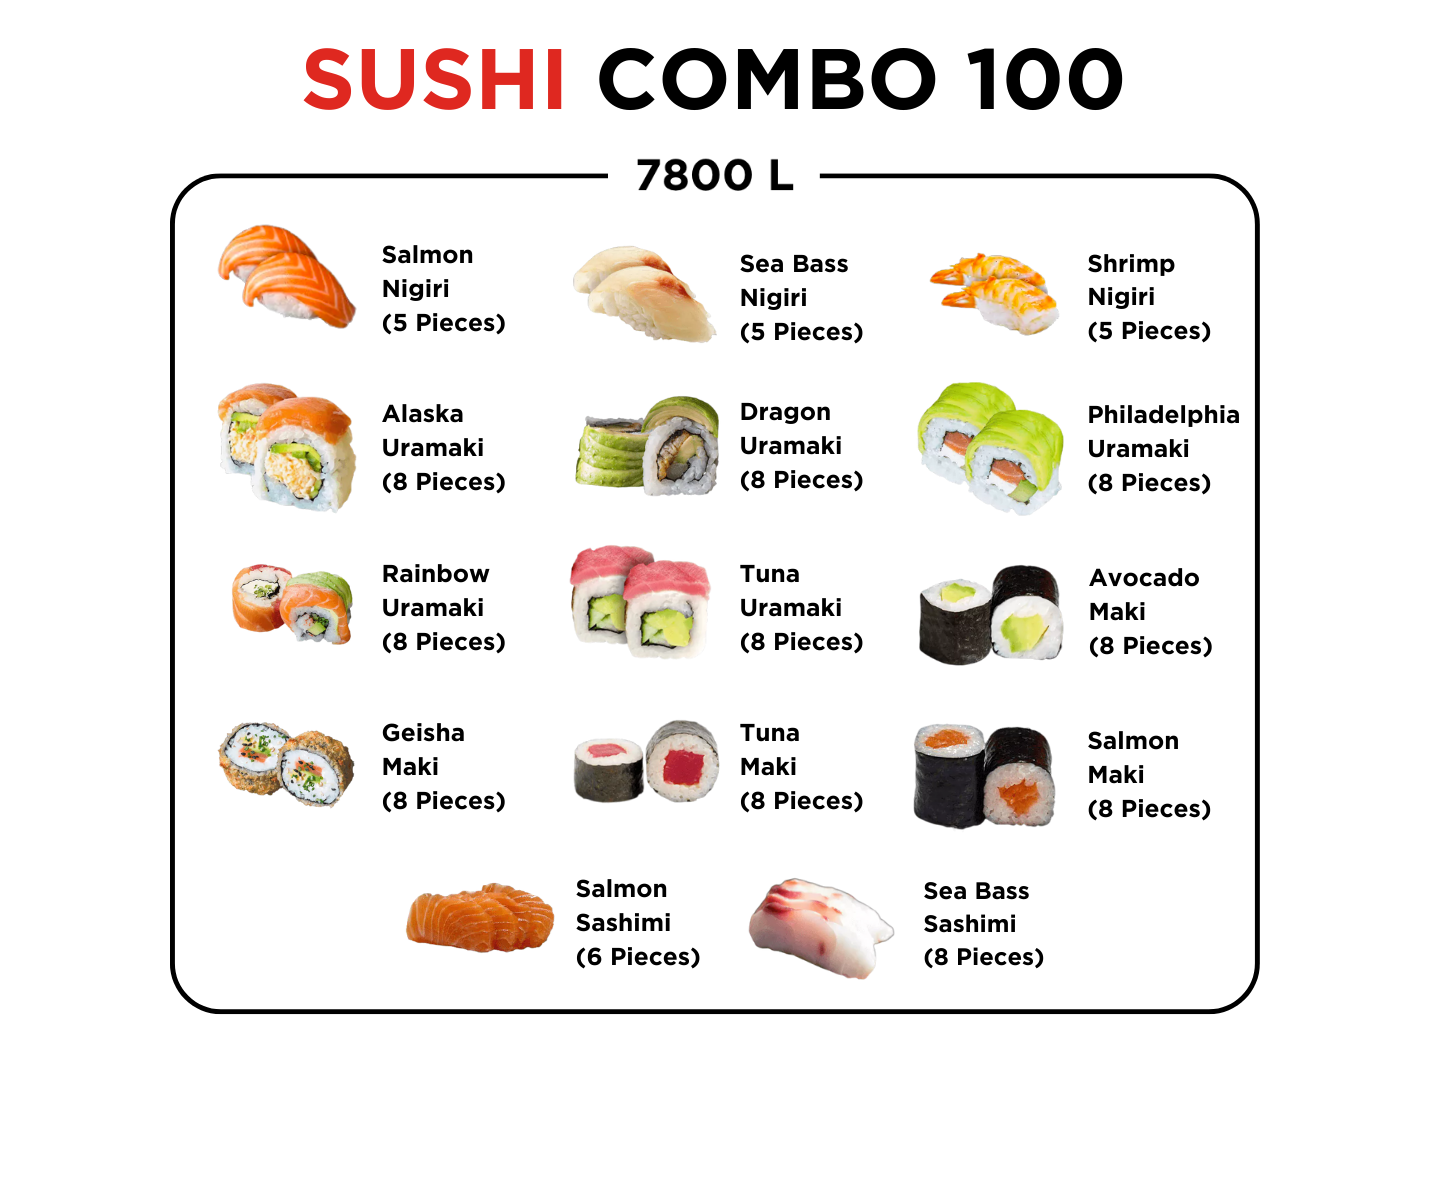 Sushi Combo 100